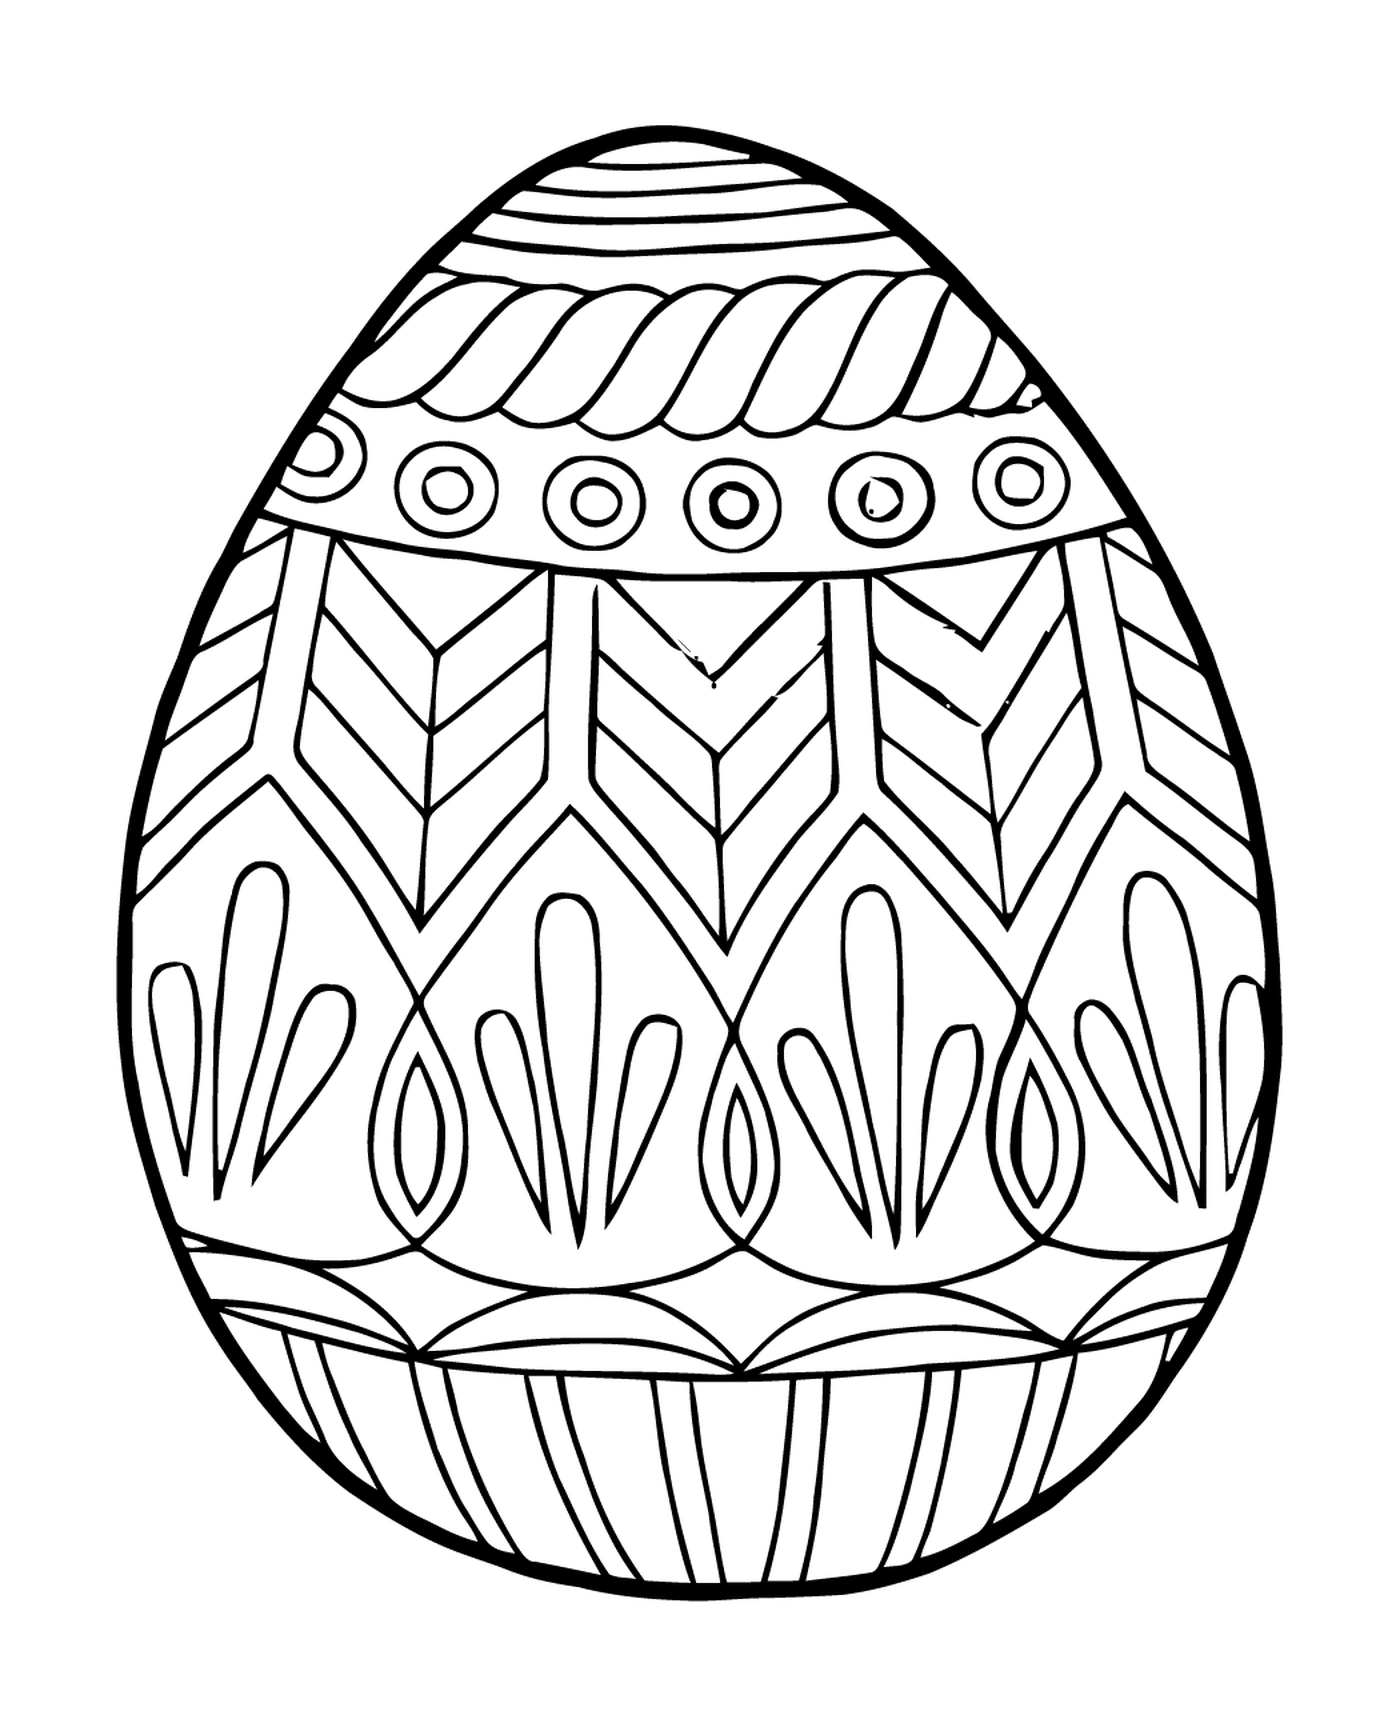  ماندالا، بيضة ملونة 